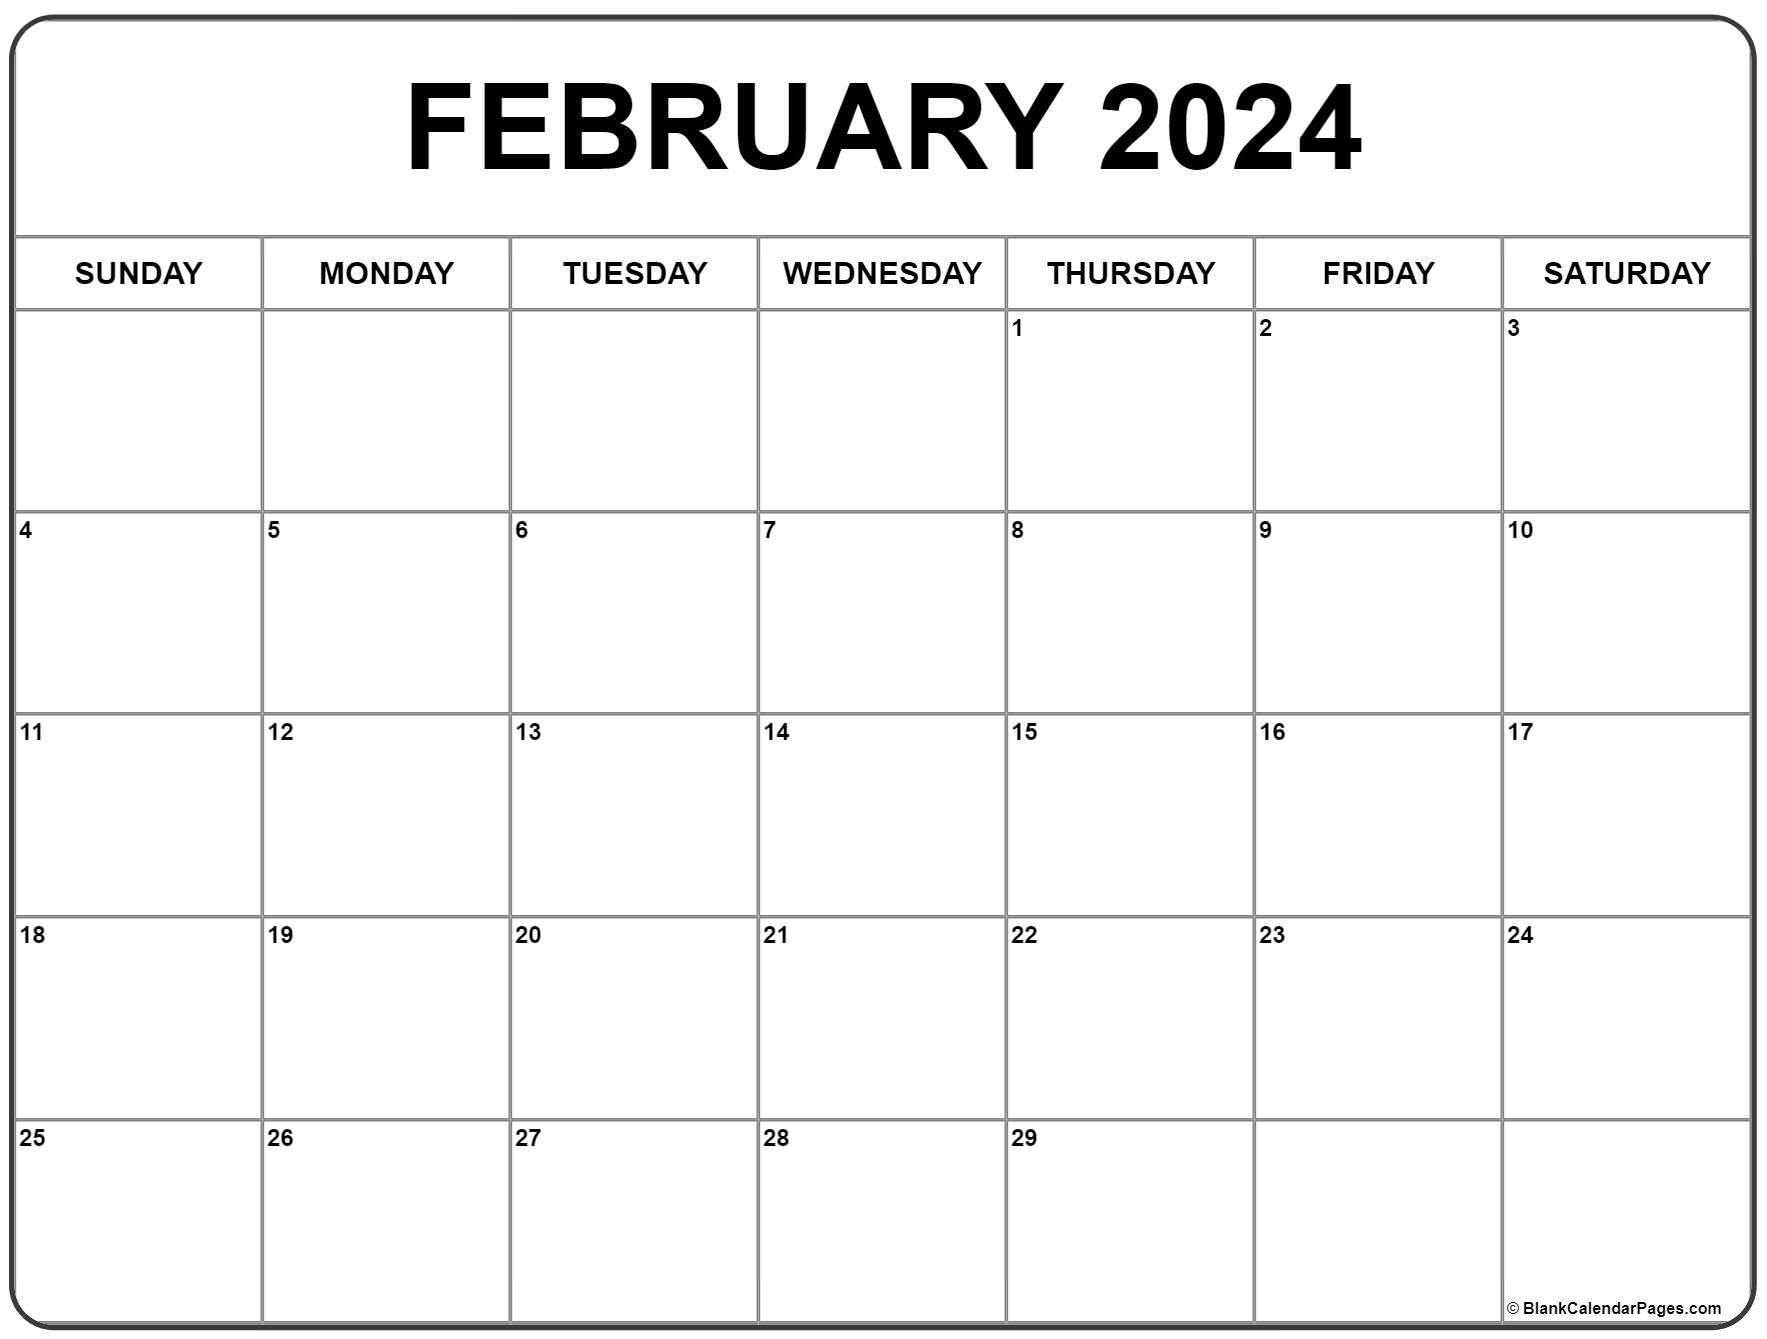 February 2024 Calendar | Free Printable Calendar | Printable Calendar 2024 February